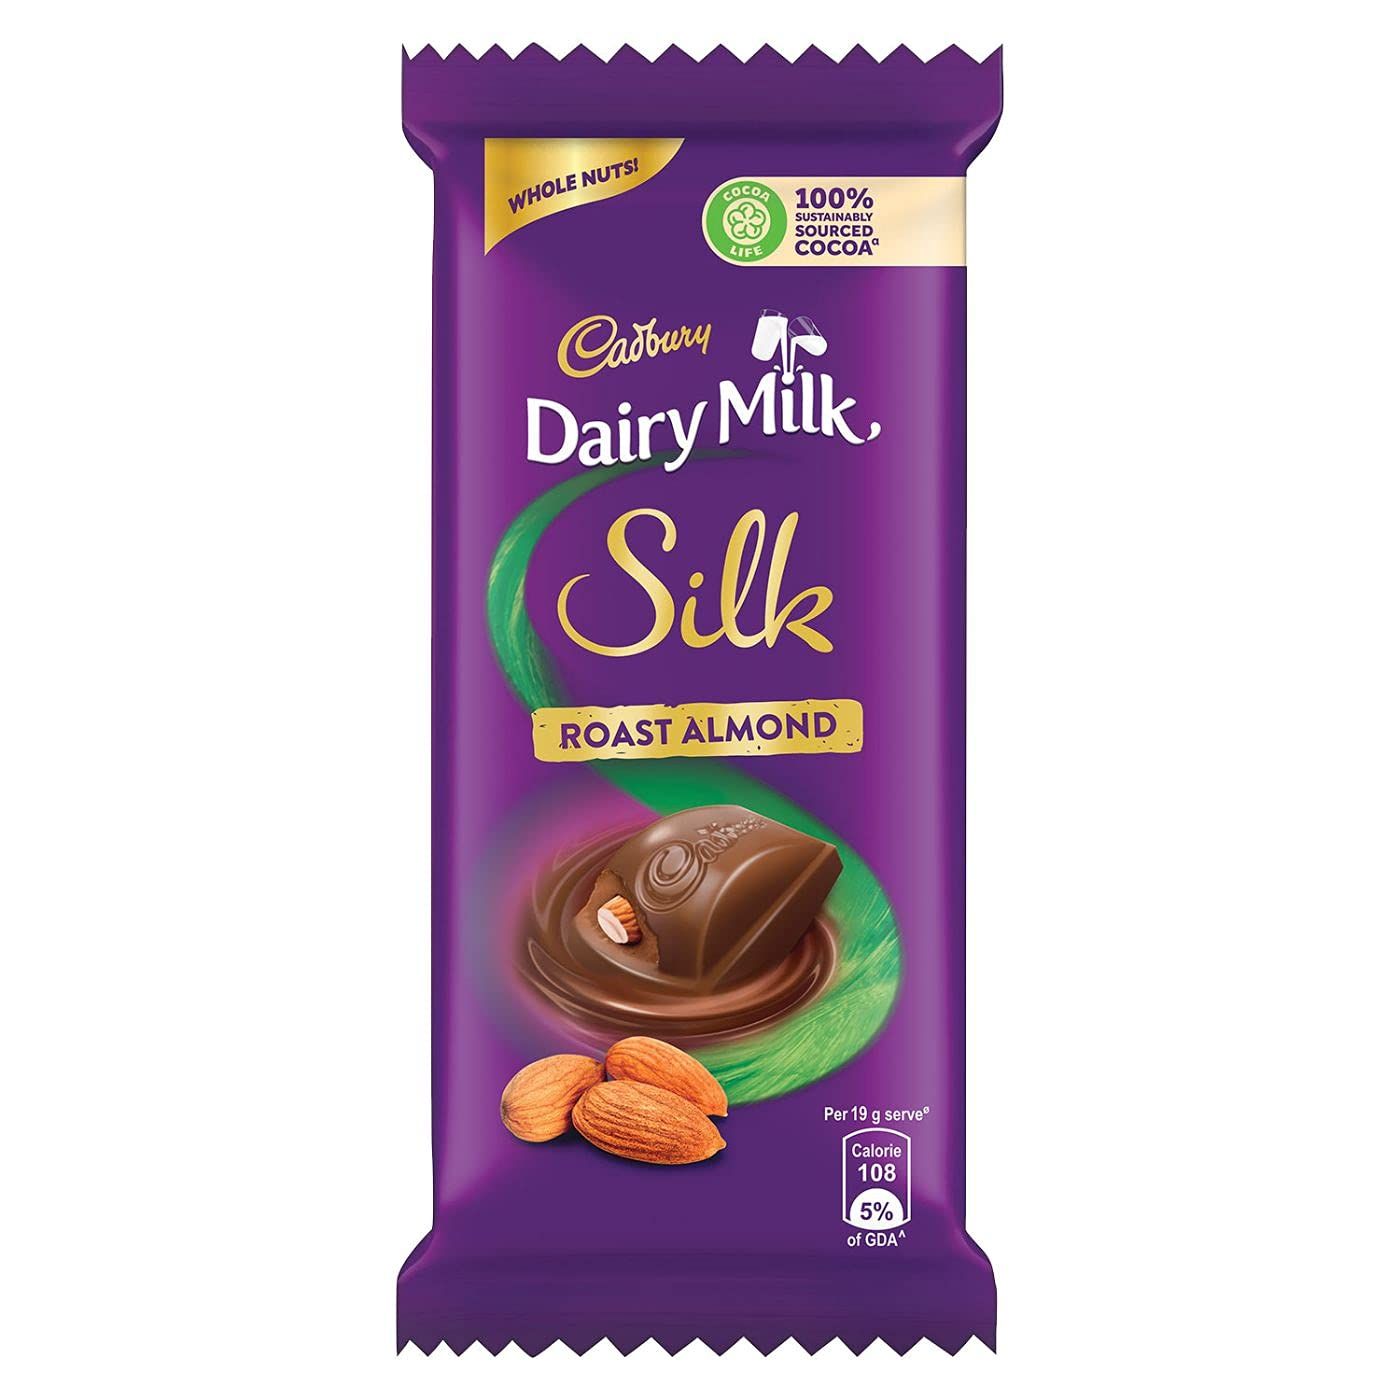 Cadbury Dairy Milk Silk Roast Almond Chocolate Image